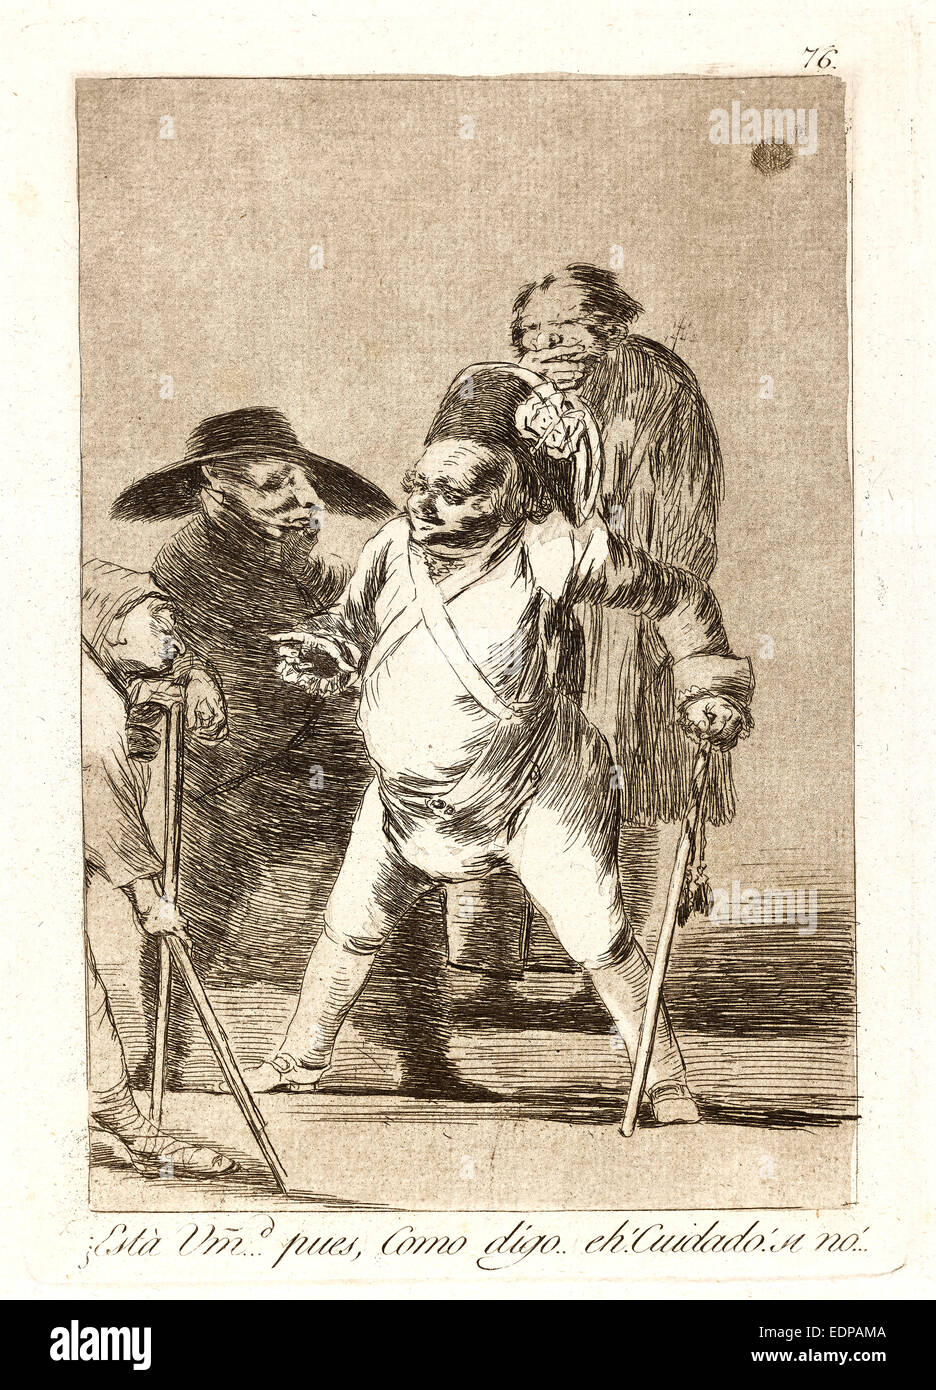 Francisco de Goya (Spagnolo, 1746-1828). ¿Está UMD. ...Pues, Como digo...eh! Cuidado! Si no! Foto Stock